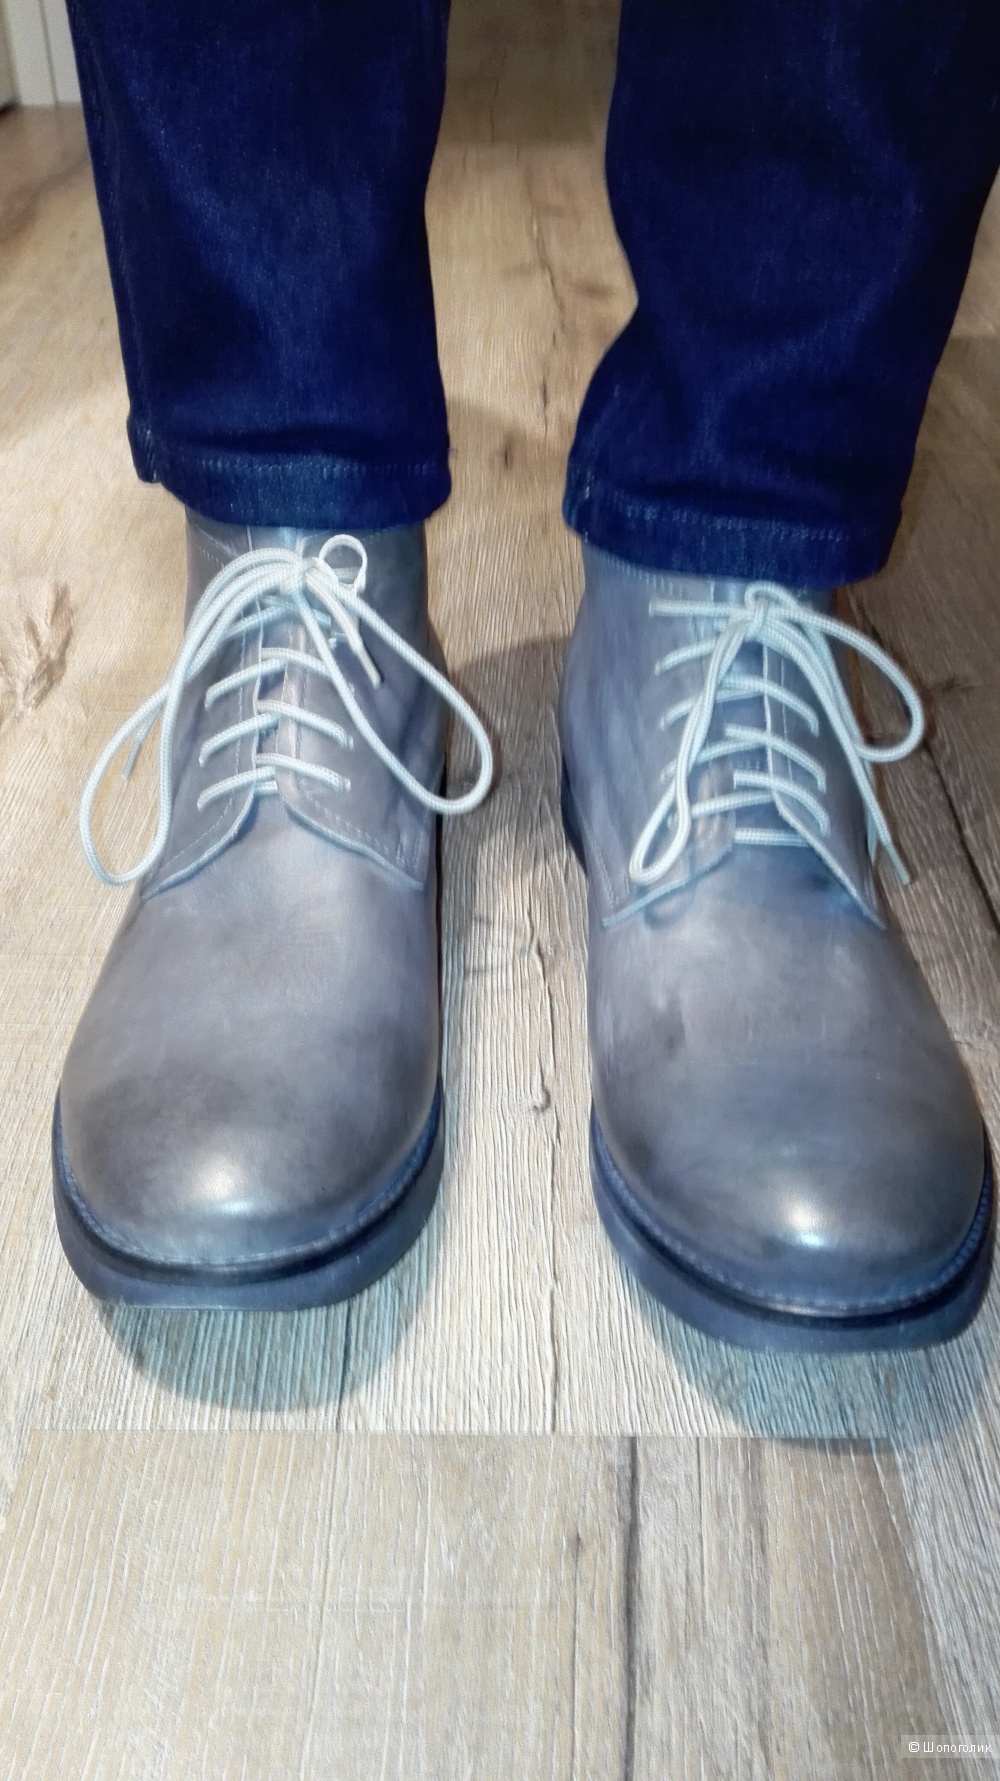 Мужские демисезонные ботинки на шнуровке дымчато-серого цвета  из телячьей кожи.Марка "HANGAR"(Made in Italy)